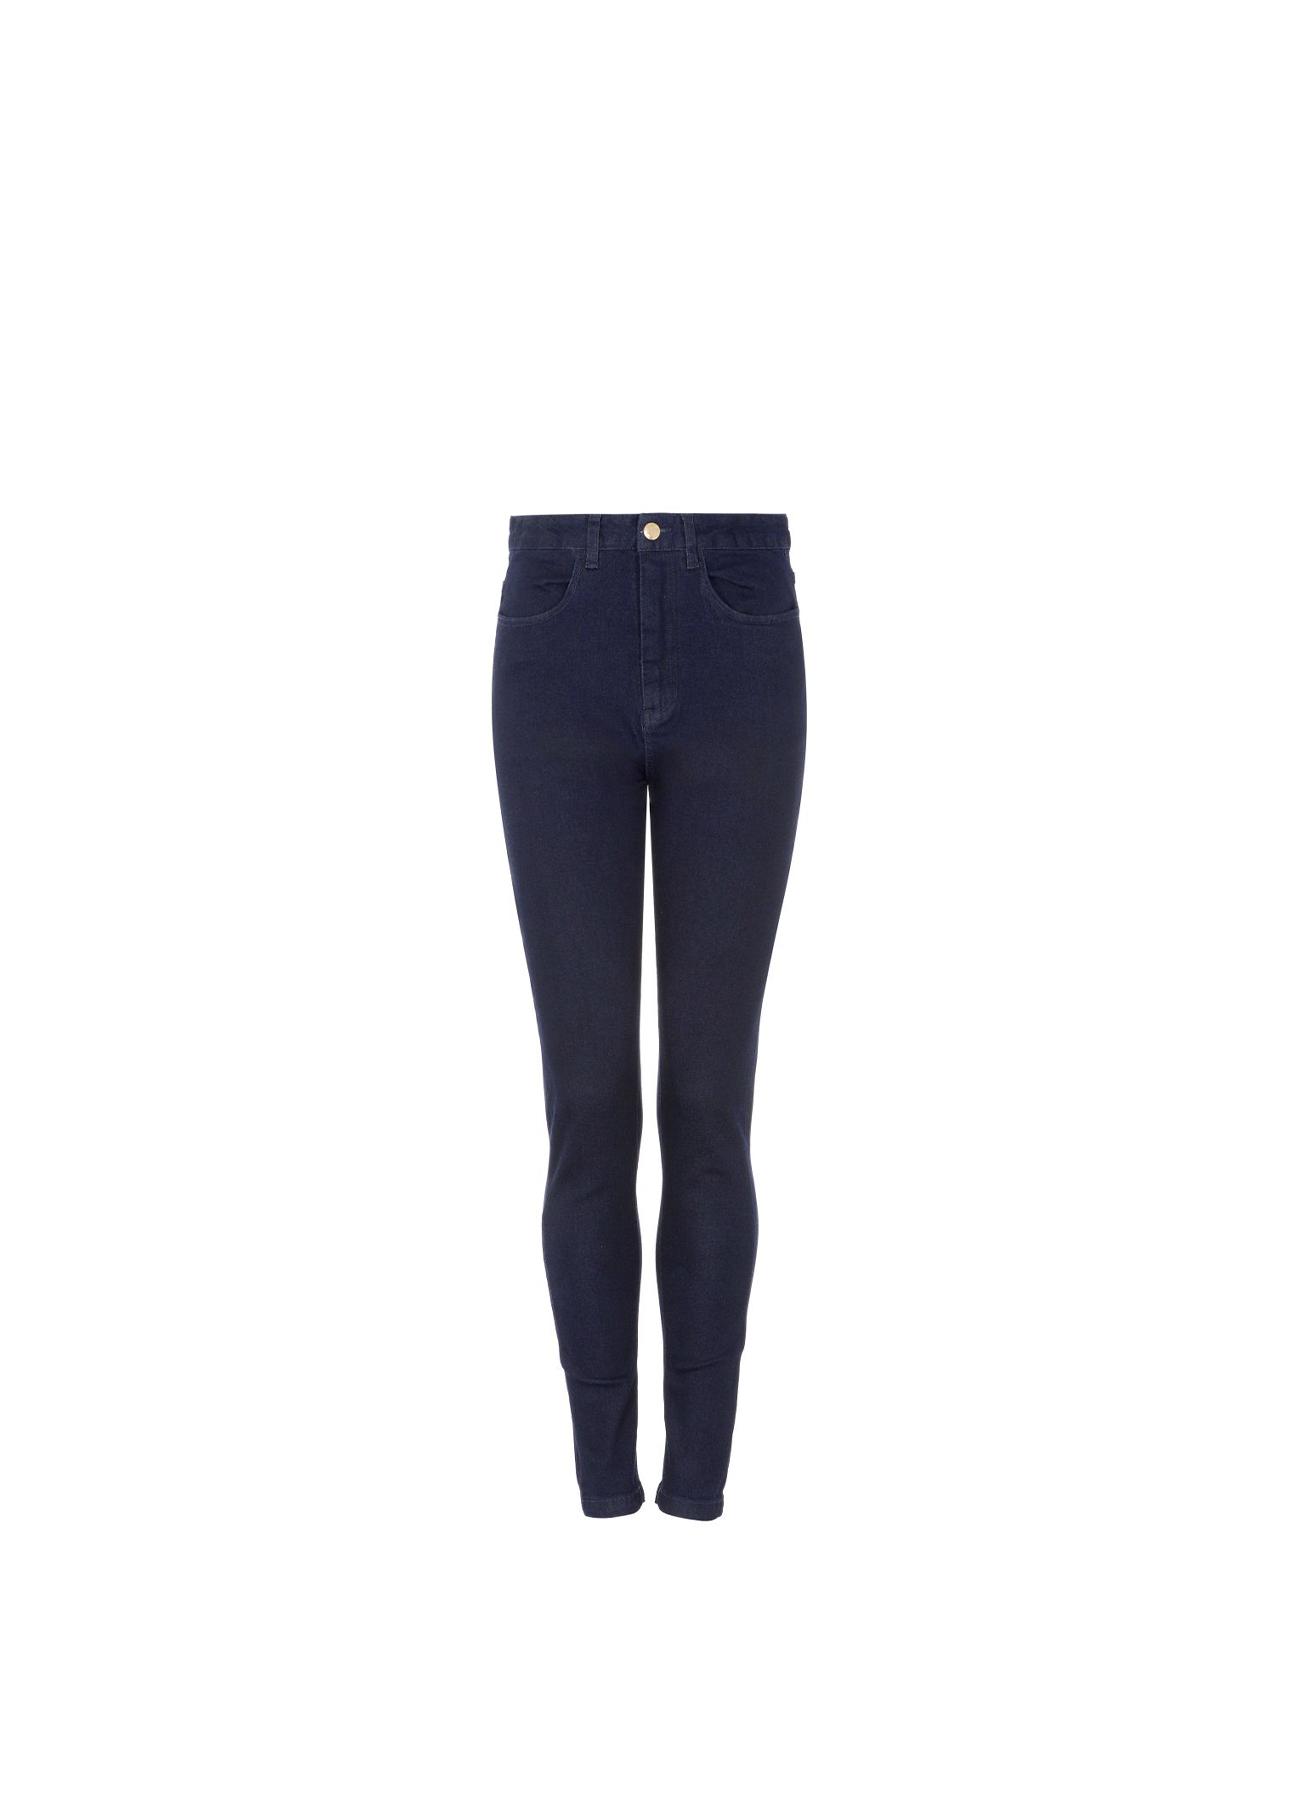 Granatowe spodnie skinny damskie SPODT-0046-69(Z21)